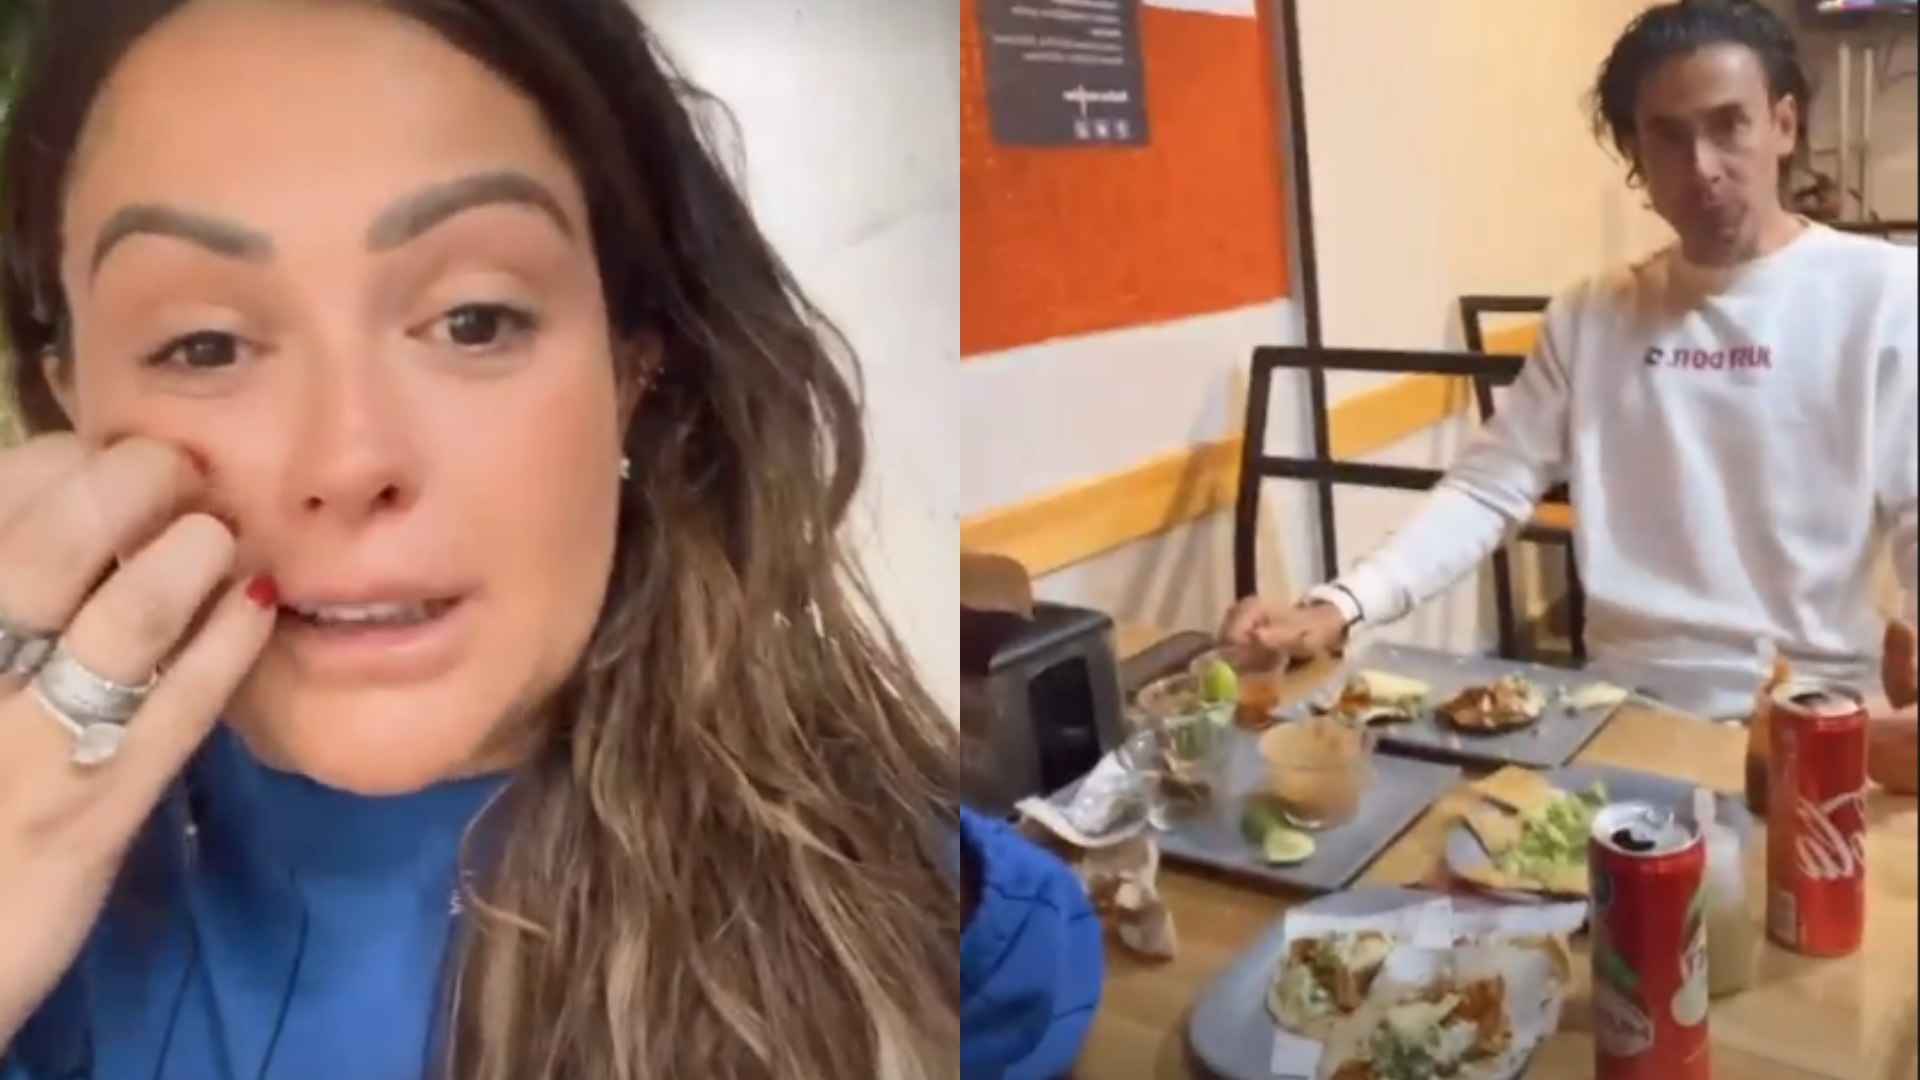 Mariana Echeverría rompió en llanto tras perder su pasaporte y no poder viajar a Marruecos; terminó comiendo en una taquería